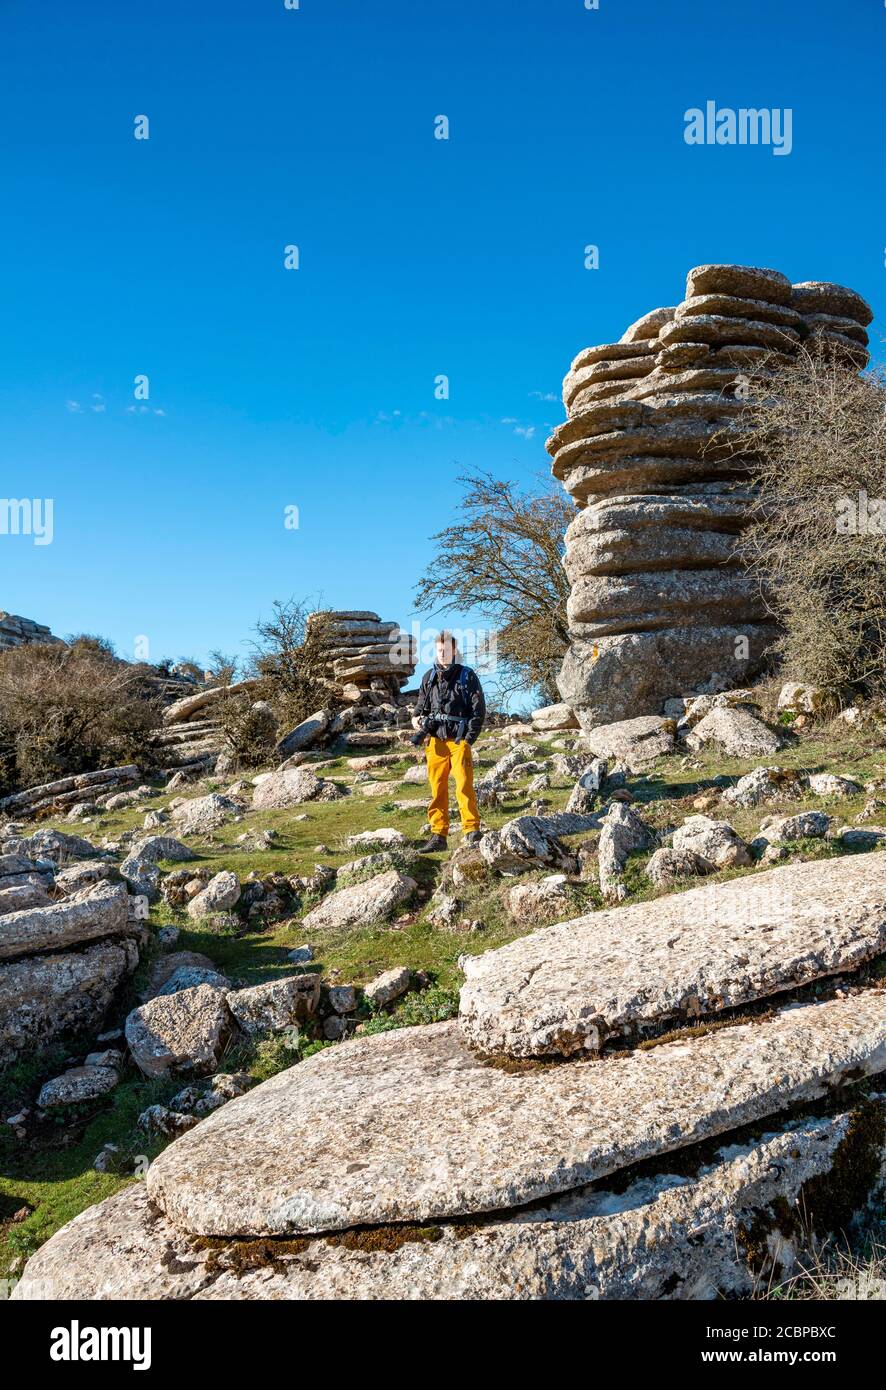 Junger Mann auf Felsen, Kalksteinformationen, El Torcal Naturschutzgebiet, Torcal de Antequera, Provinz Malaga, Andalusien, Spanien Stockfoto